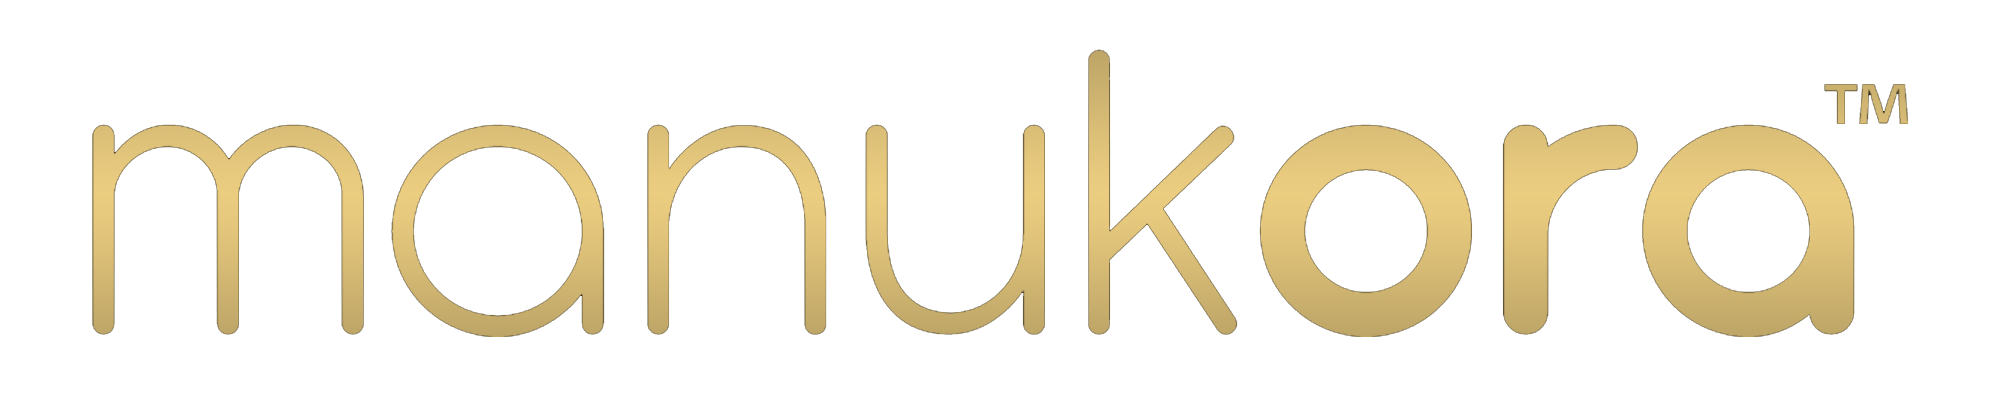 Manukora Gold Logo.png